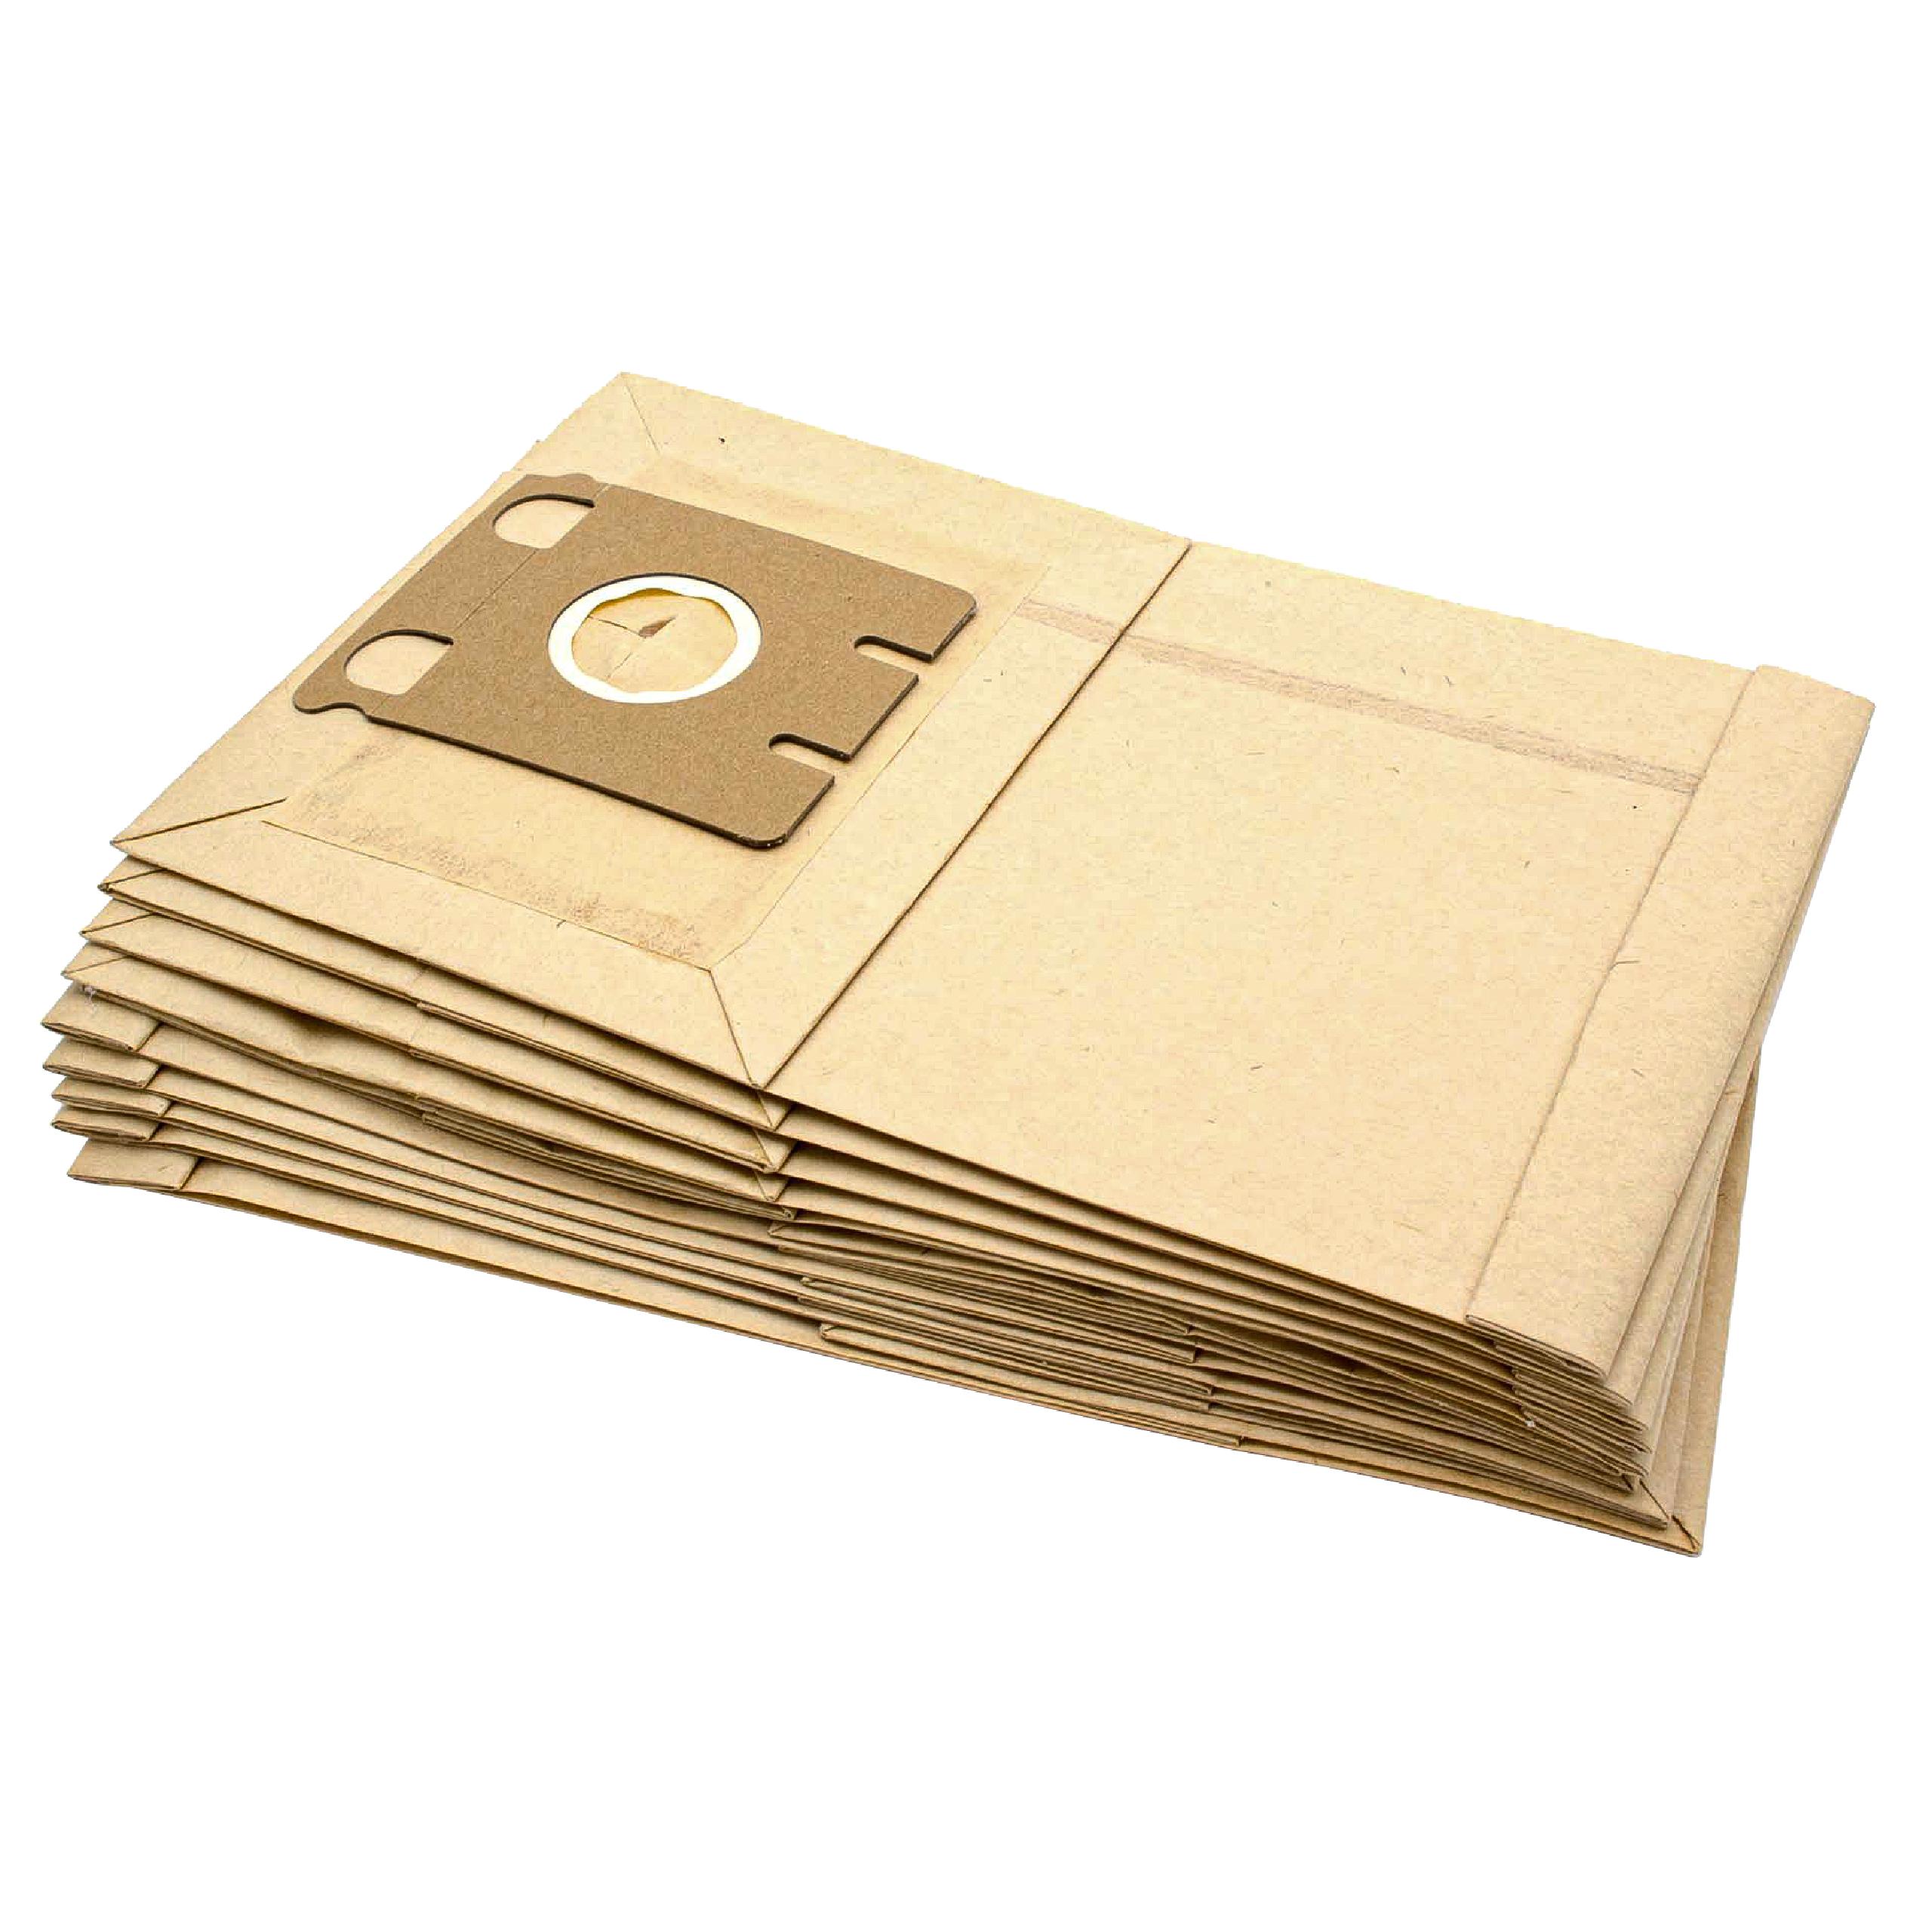 10x worek do odkurzacza Miele zamiennik Europlus M305 - papier